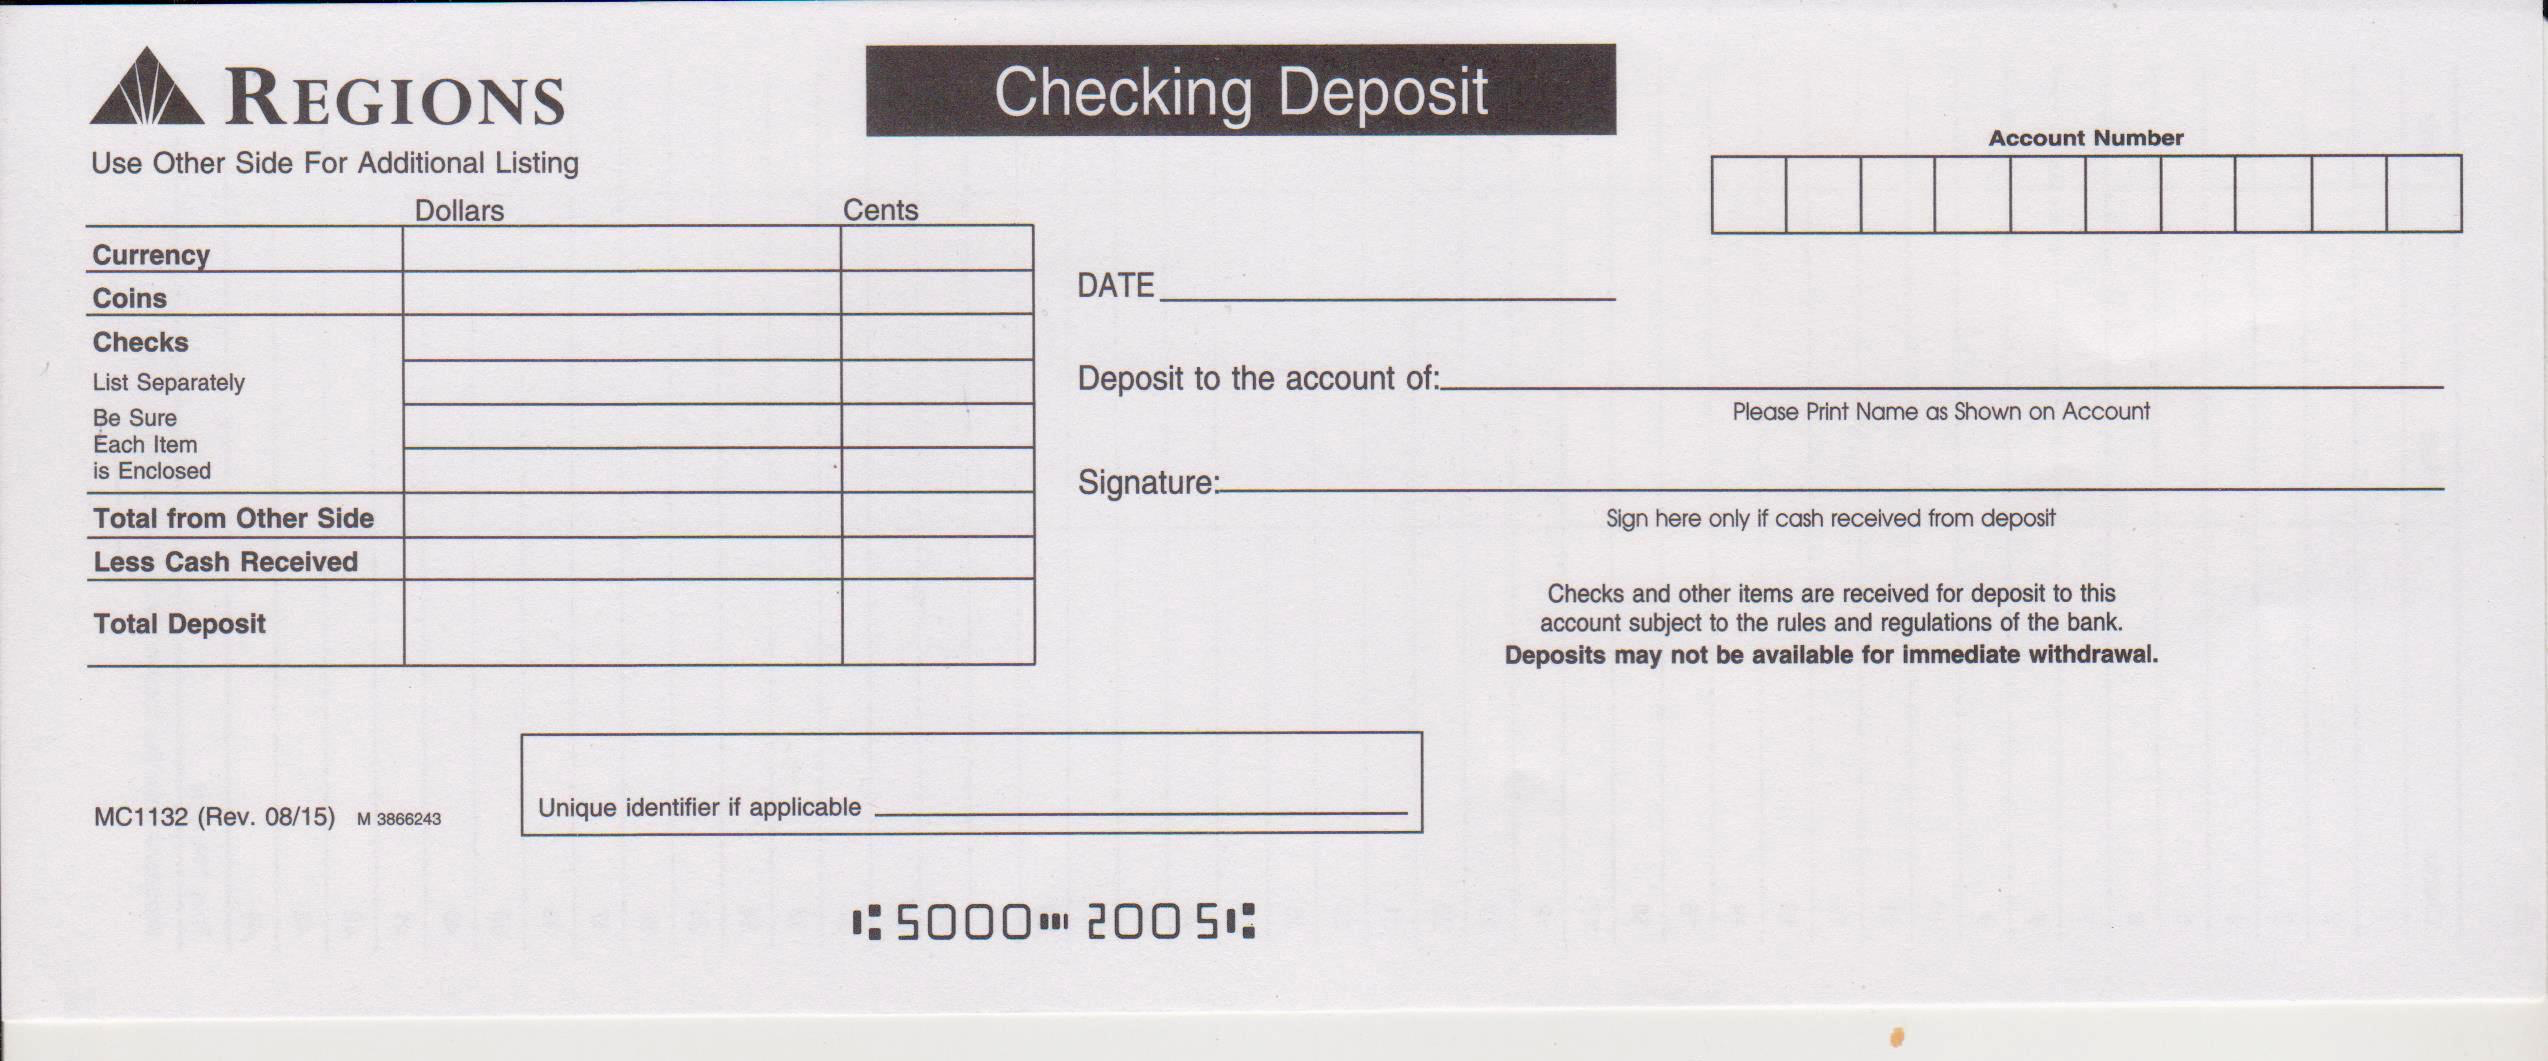 Regions Bank Deposit Slip - Free Printable Template - CheckDeposit Regarding Generic Deposit Slip Template